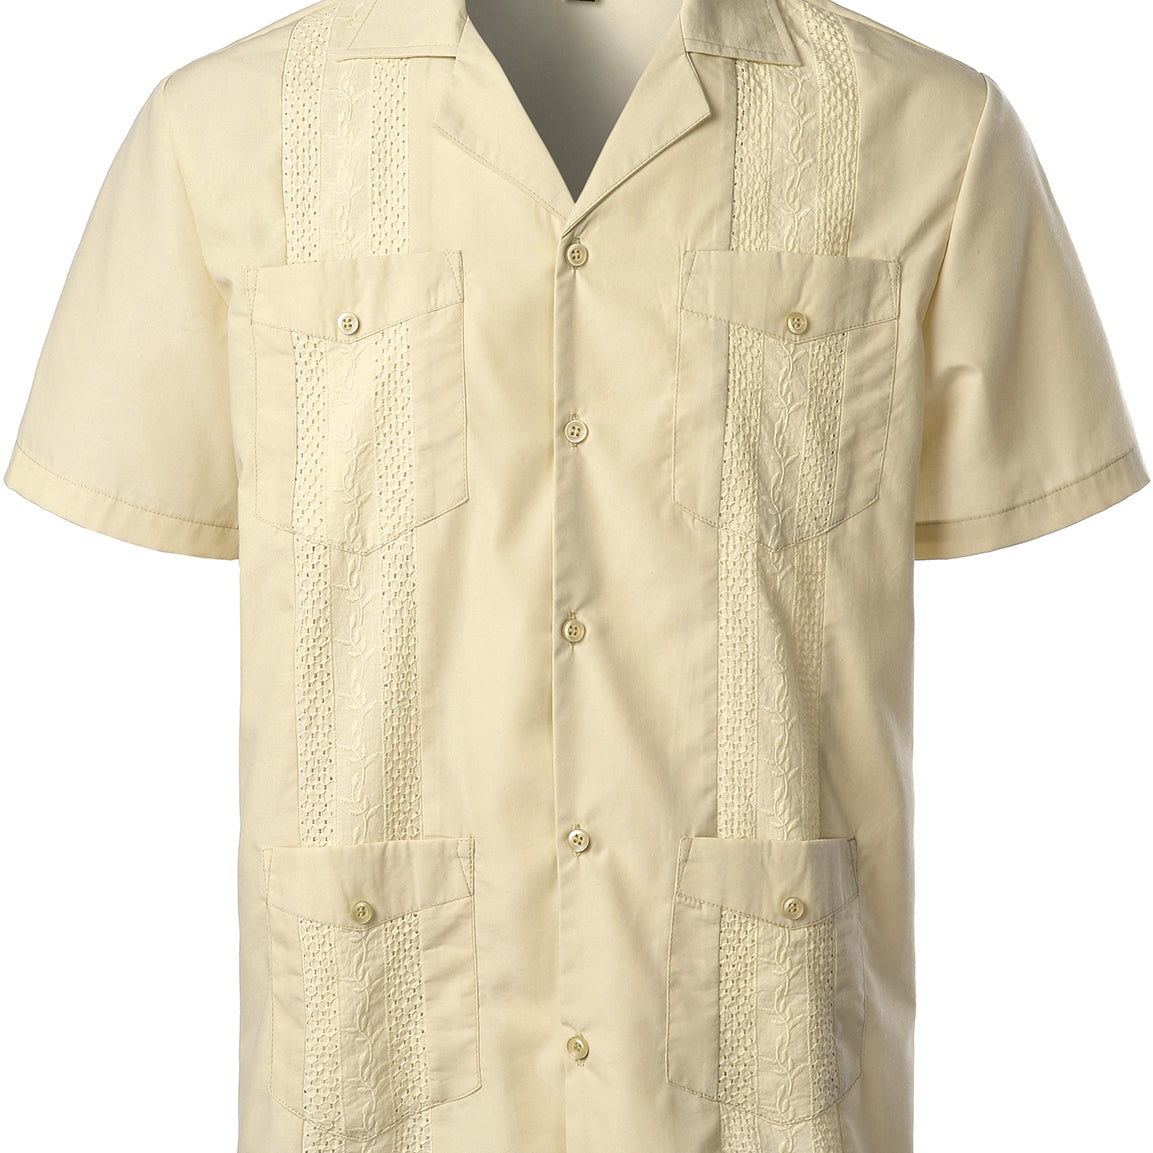 Men's Regular fit Pockets Short Sleeve Shirt